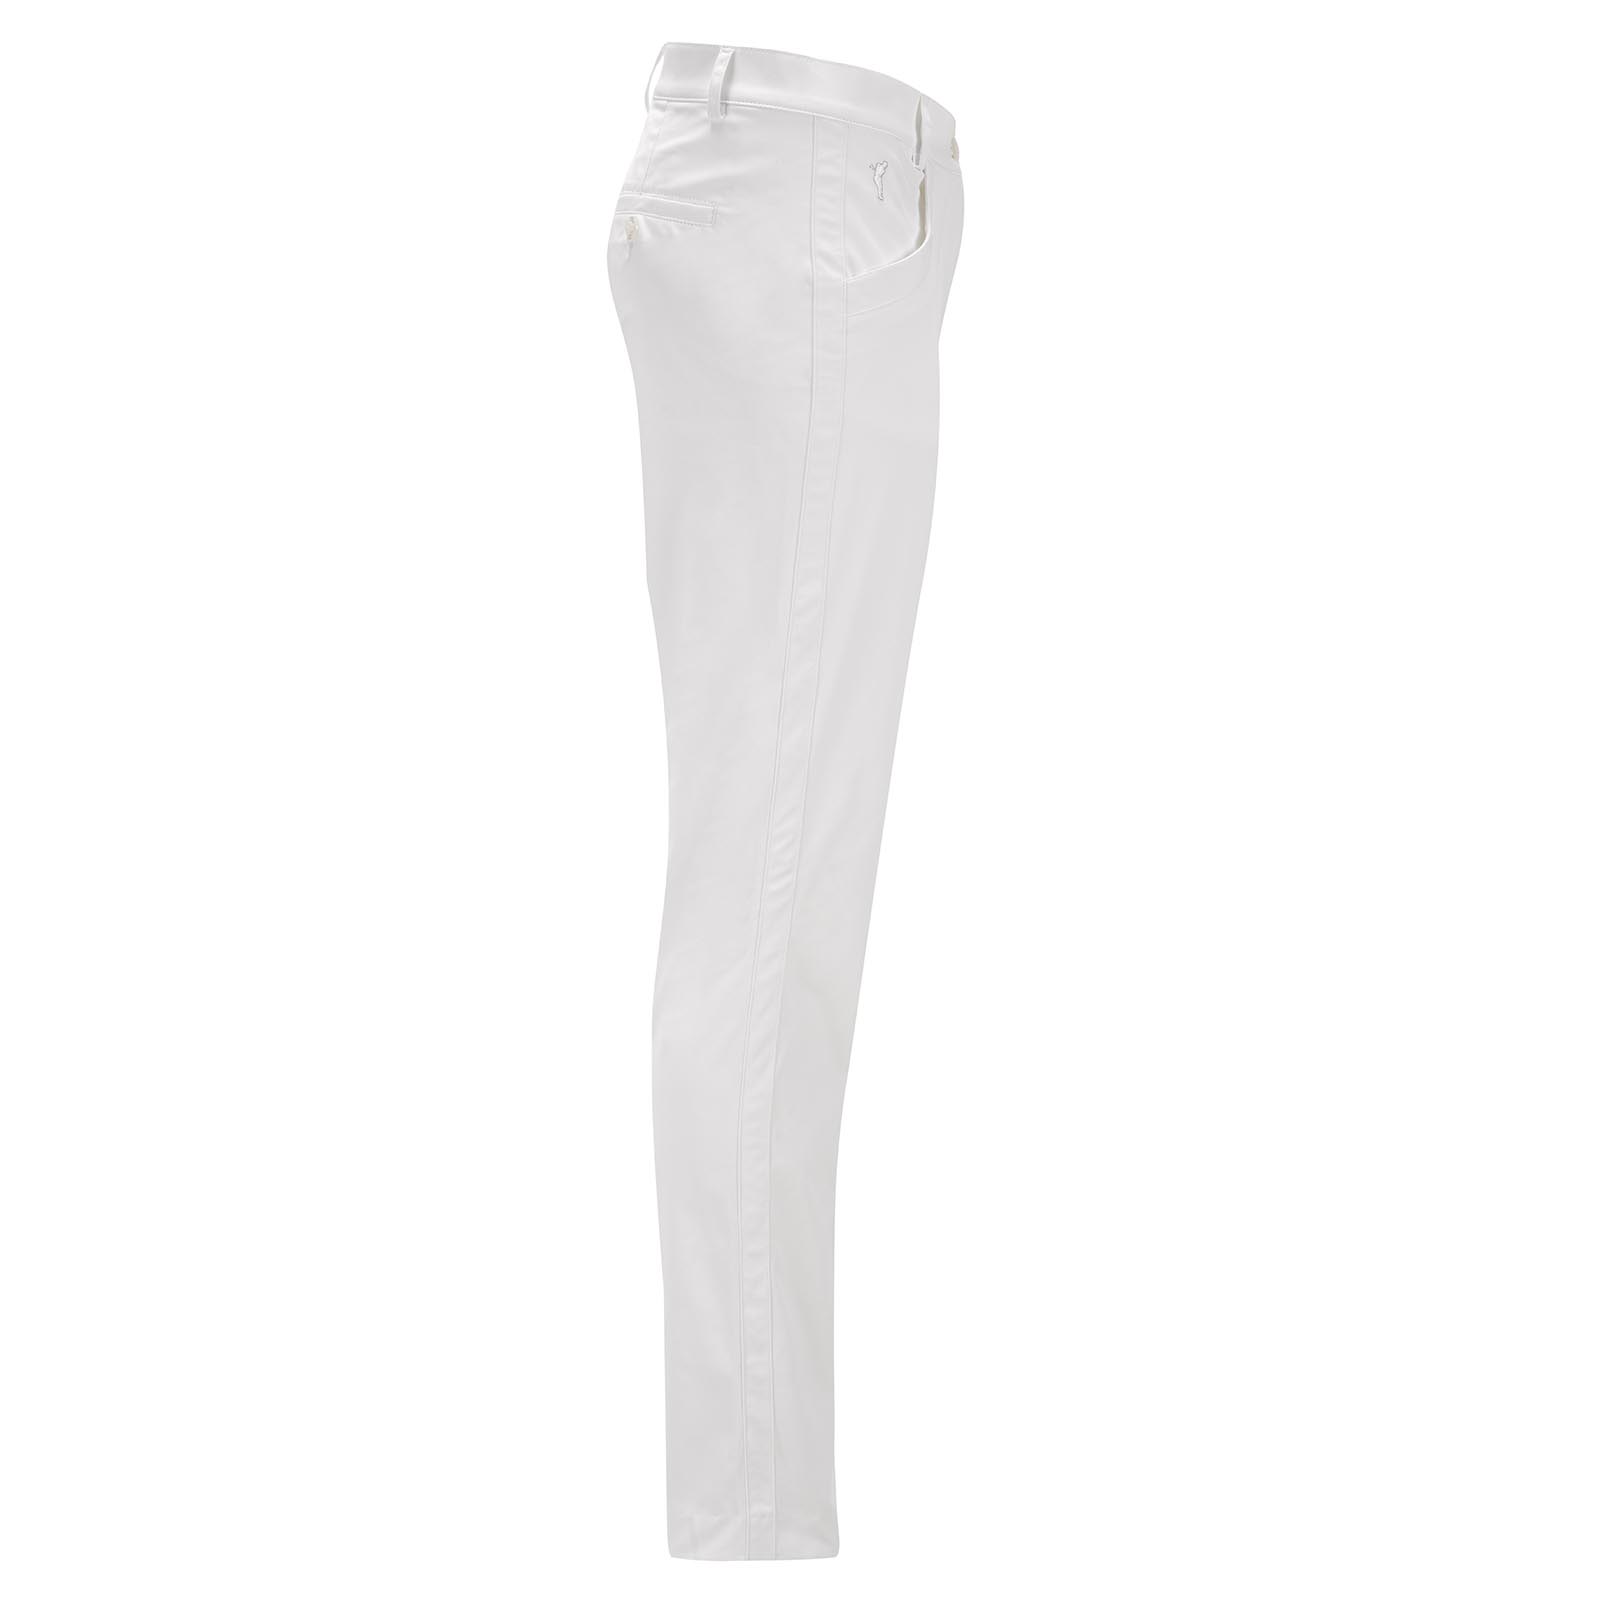 Pantalon 7/8 pour femme tissu Stretch légèrement chatoyant anti-UV